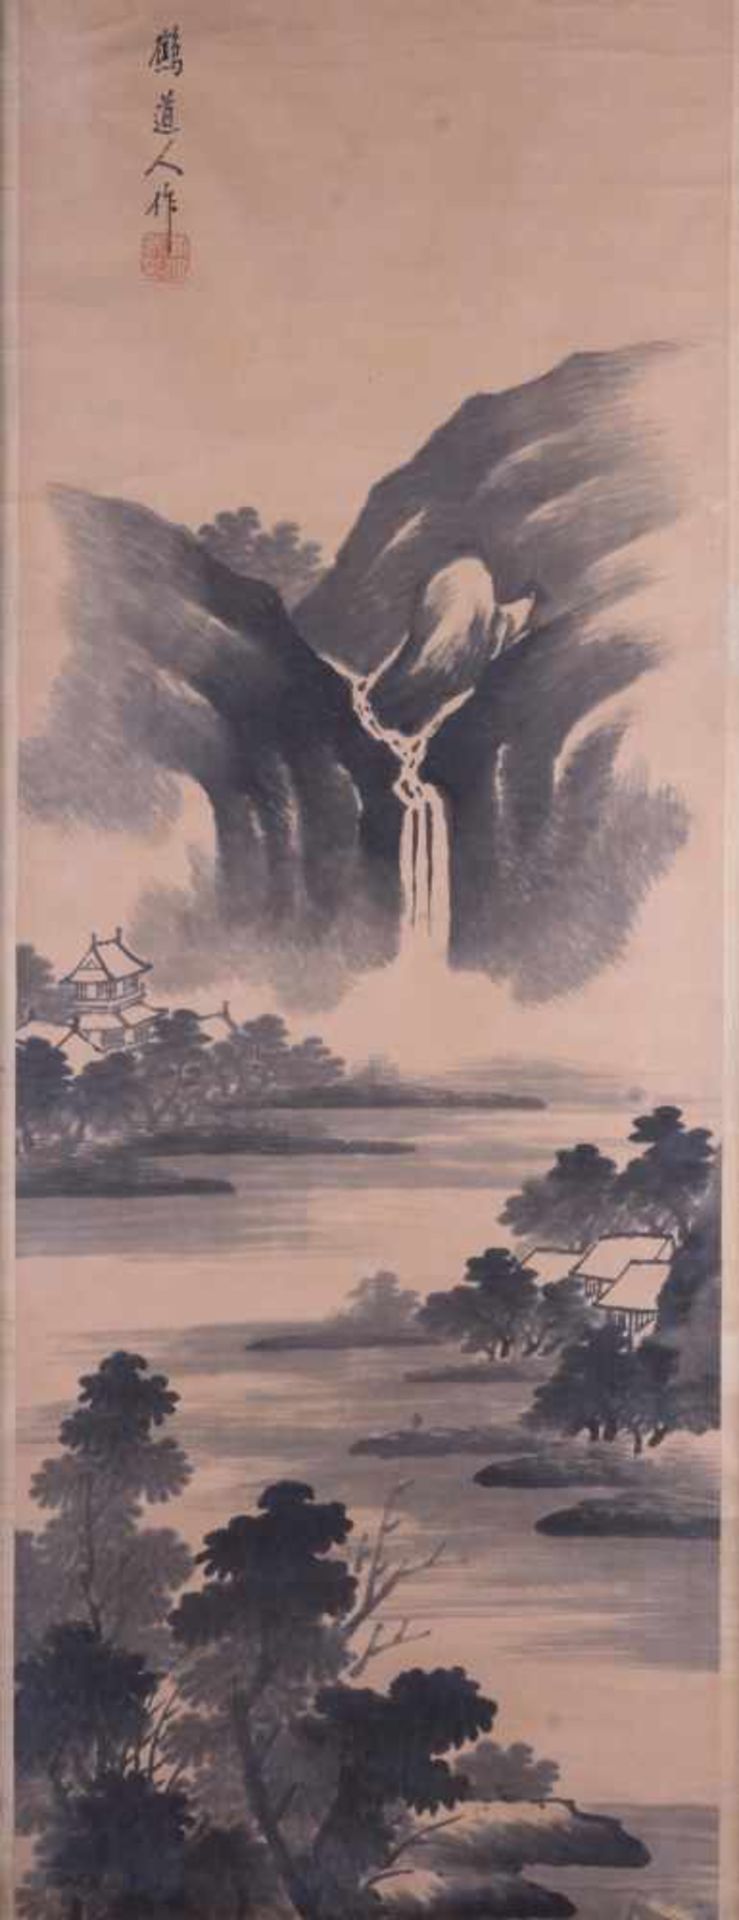 Wandbild China 19. Jhd. Tuschmalerei auf Papier, Schriftzeichen und Signaturstempel, 95 cm x 40 cm